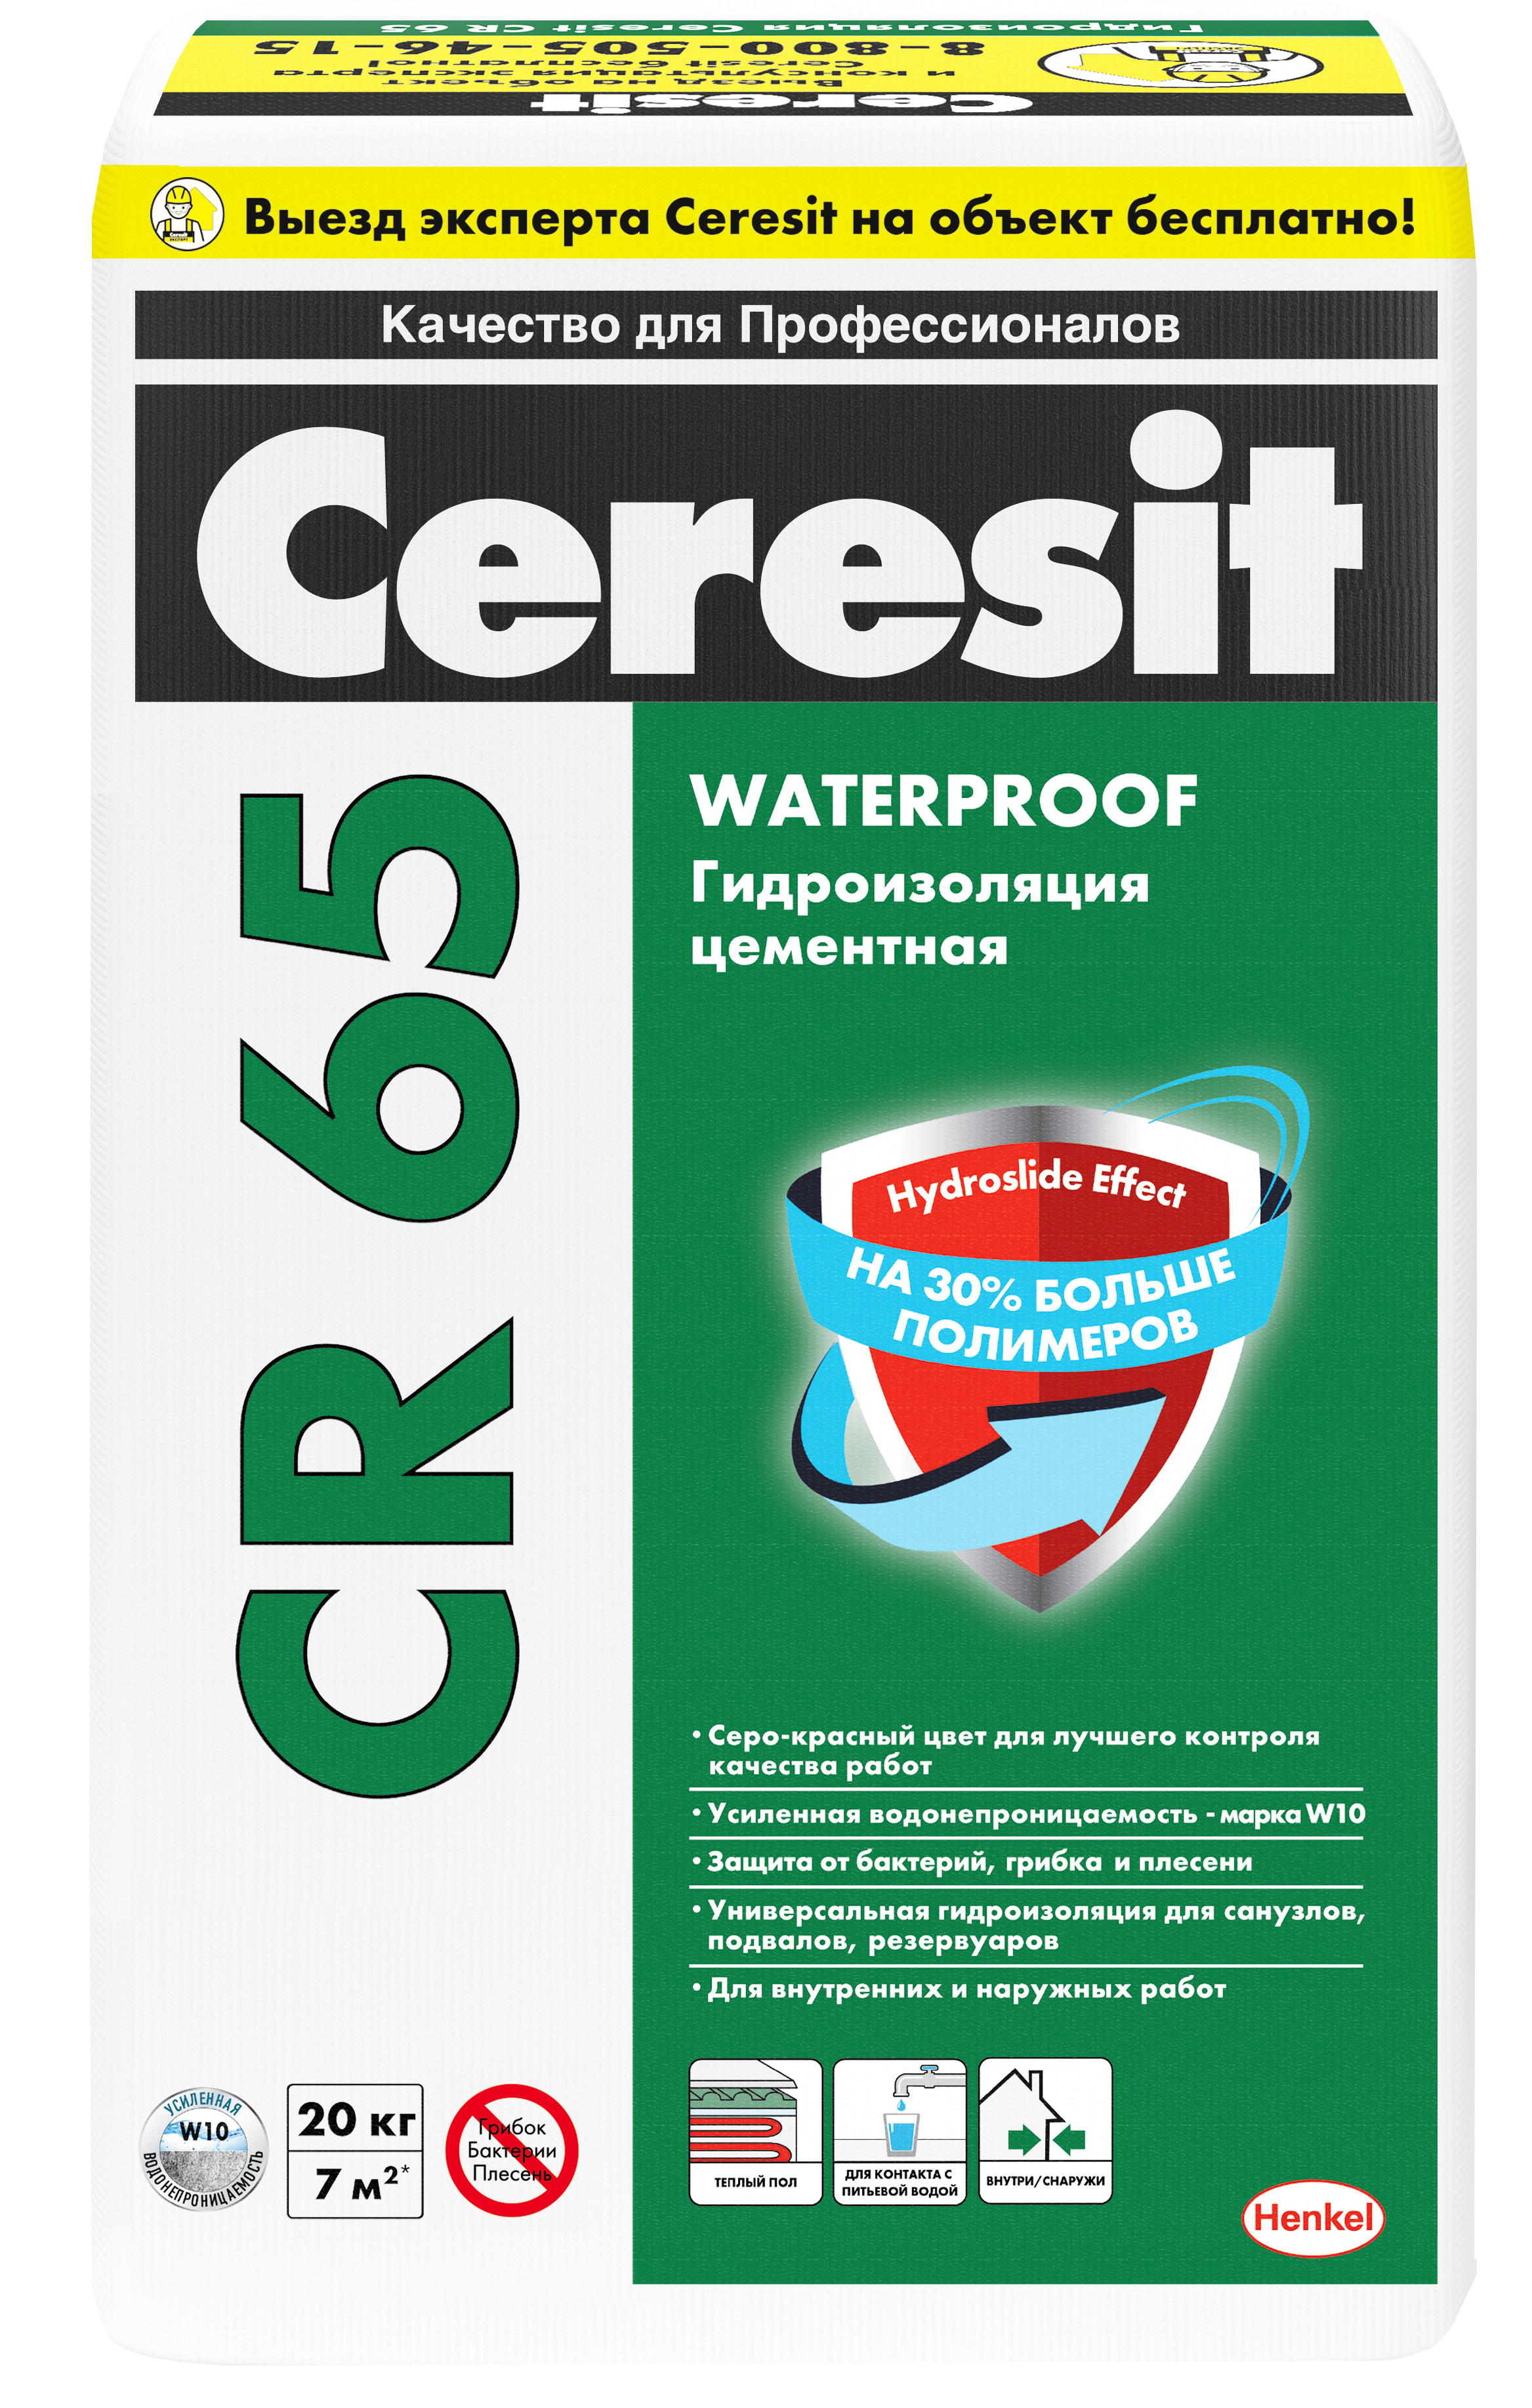 Масса гидроиз. Waterproof CERESIT фольга CR65, 20кг купить - ТеплоСтрой